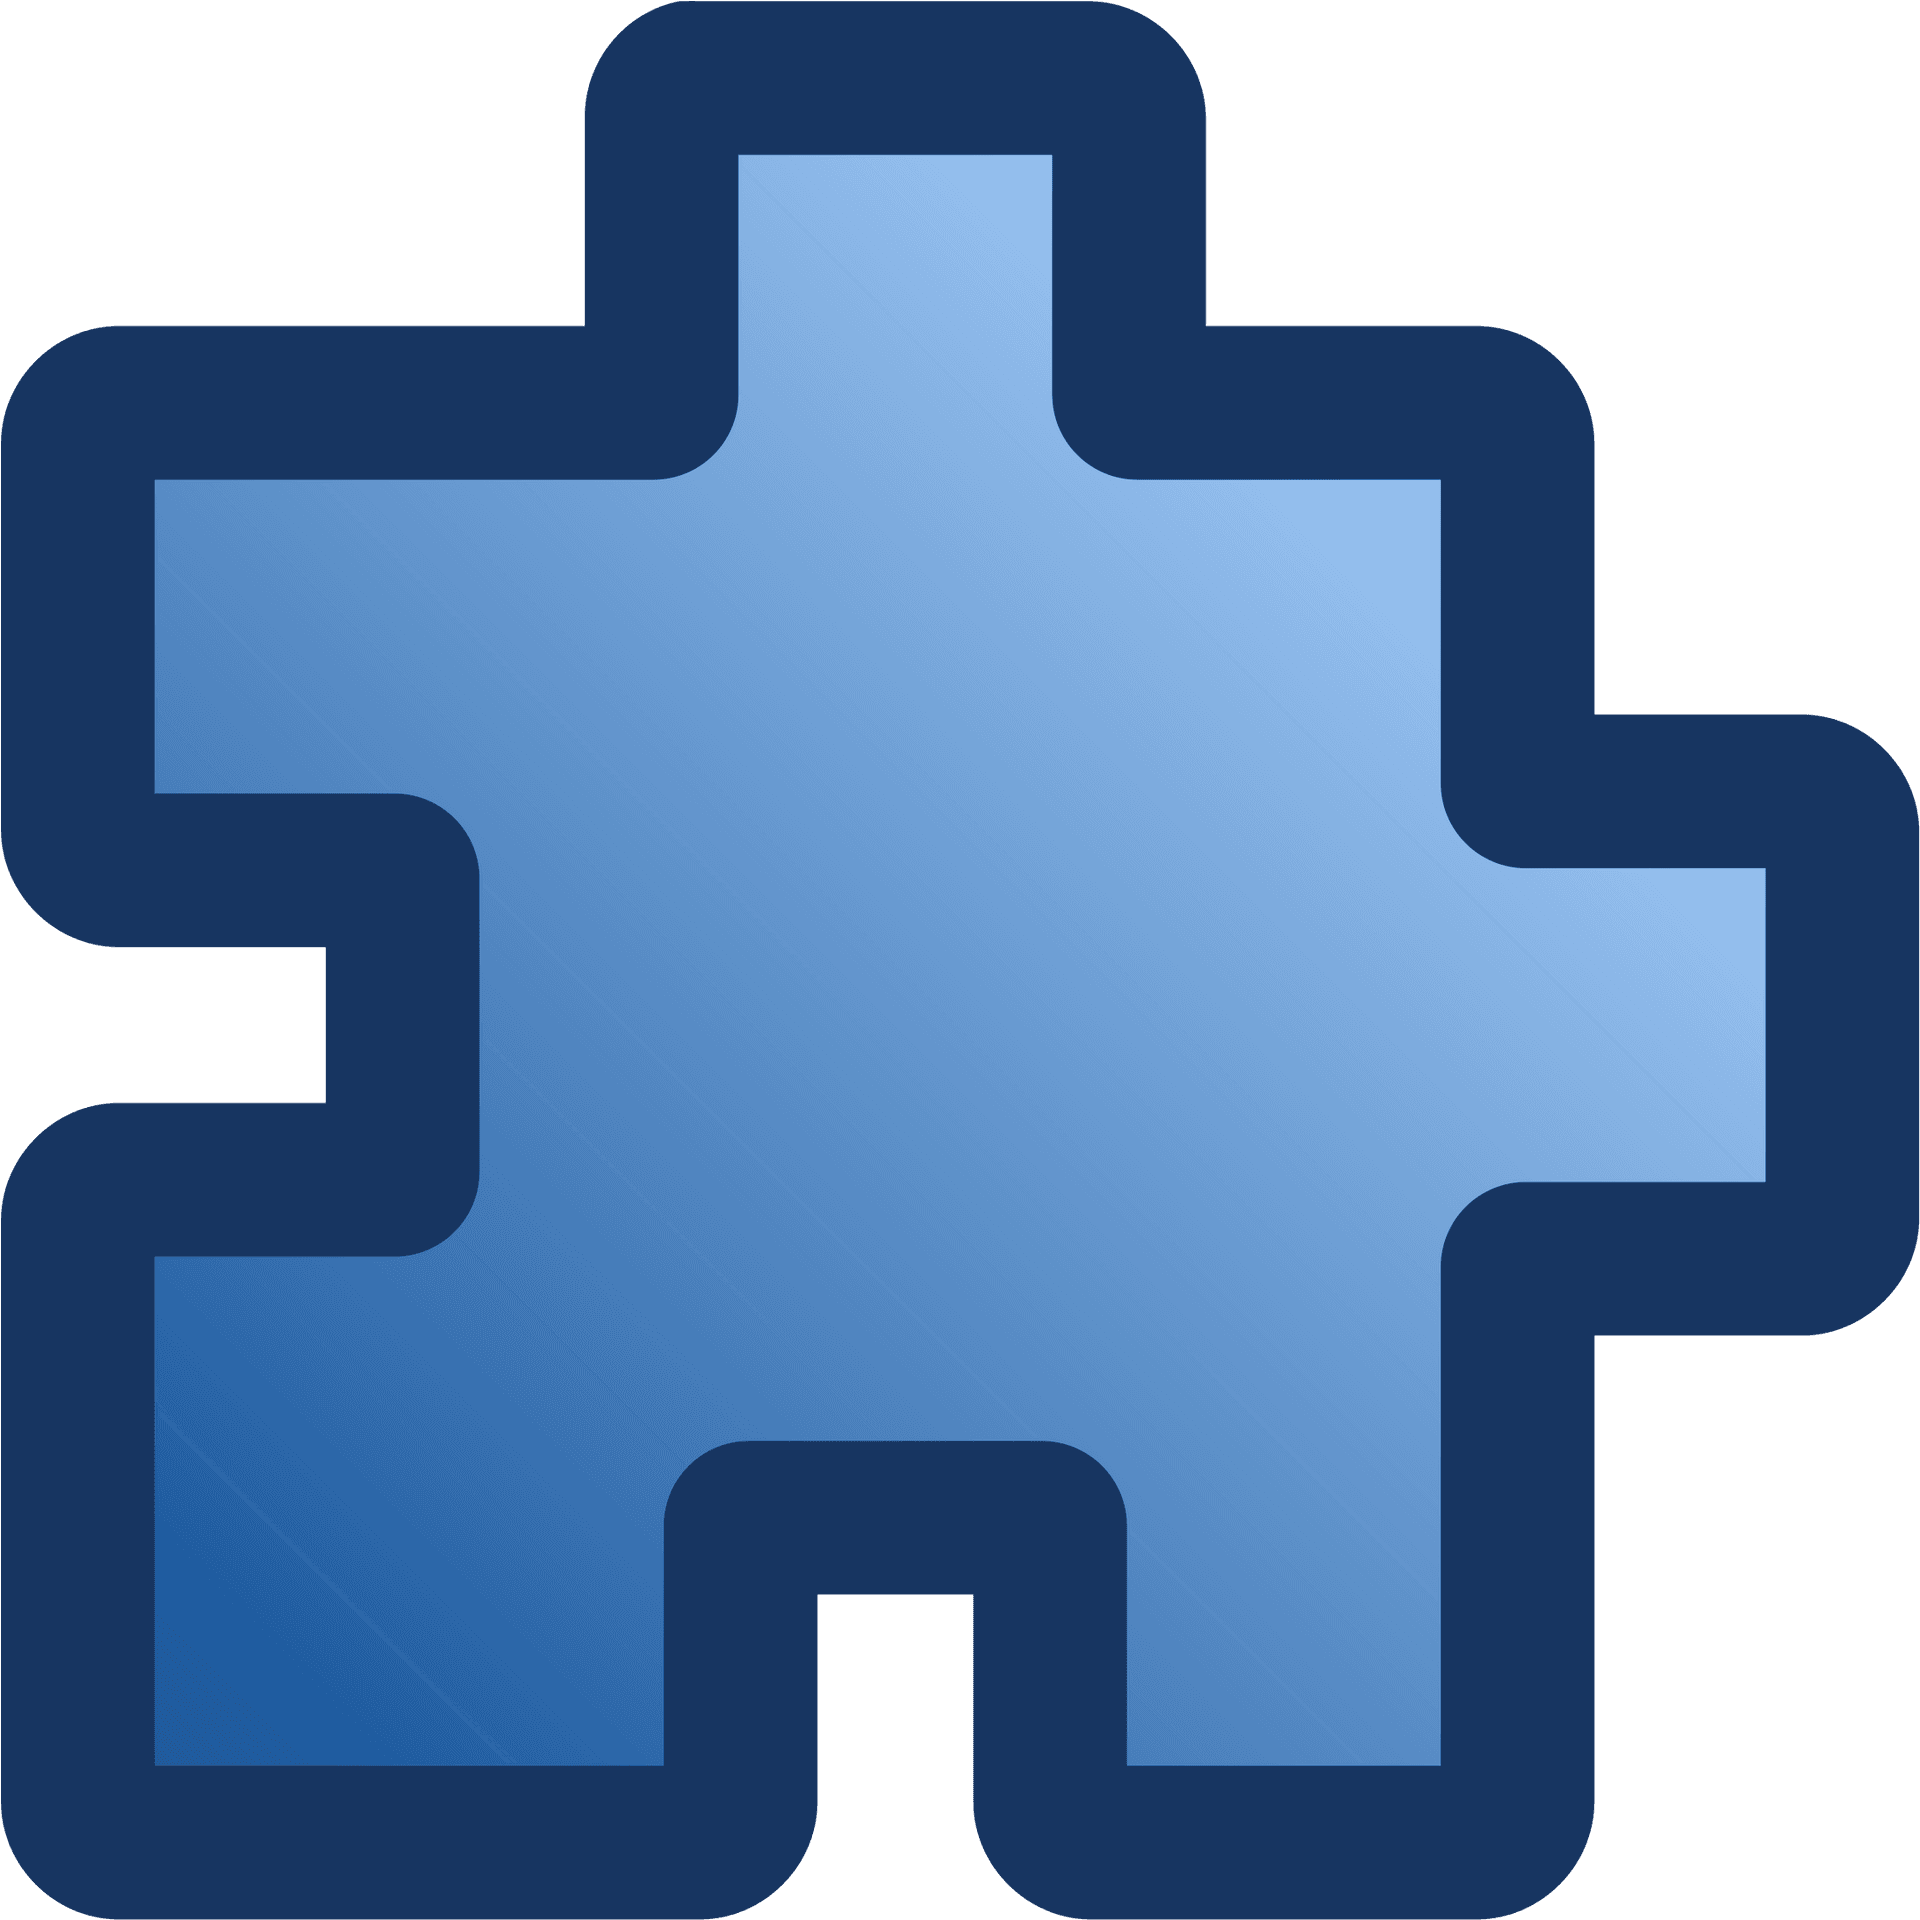 Single Blue Puzzle Piece PNG